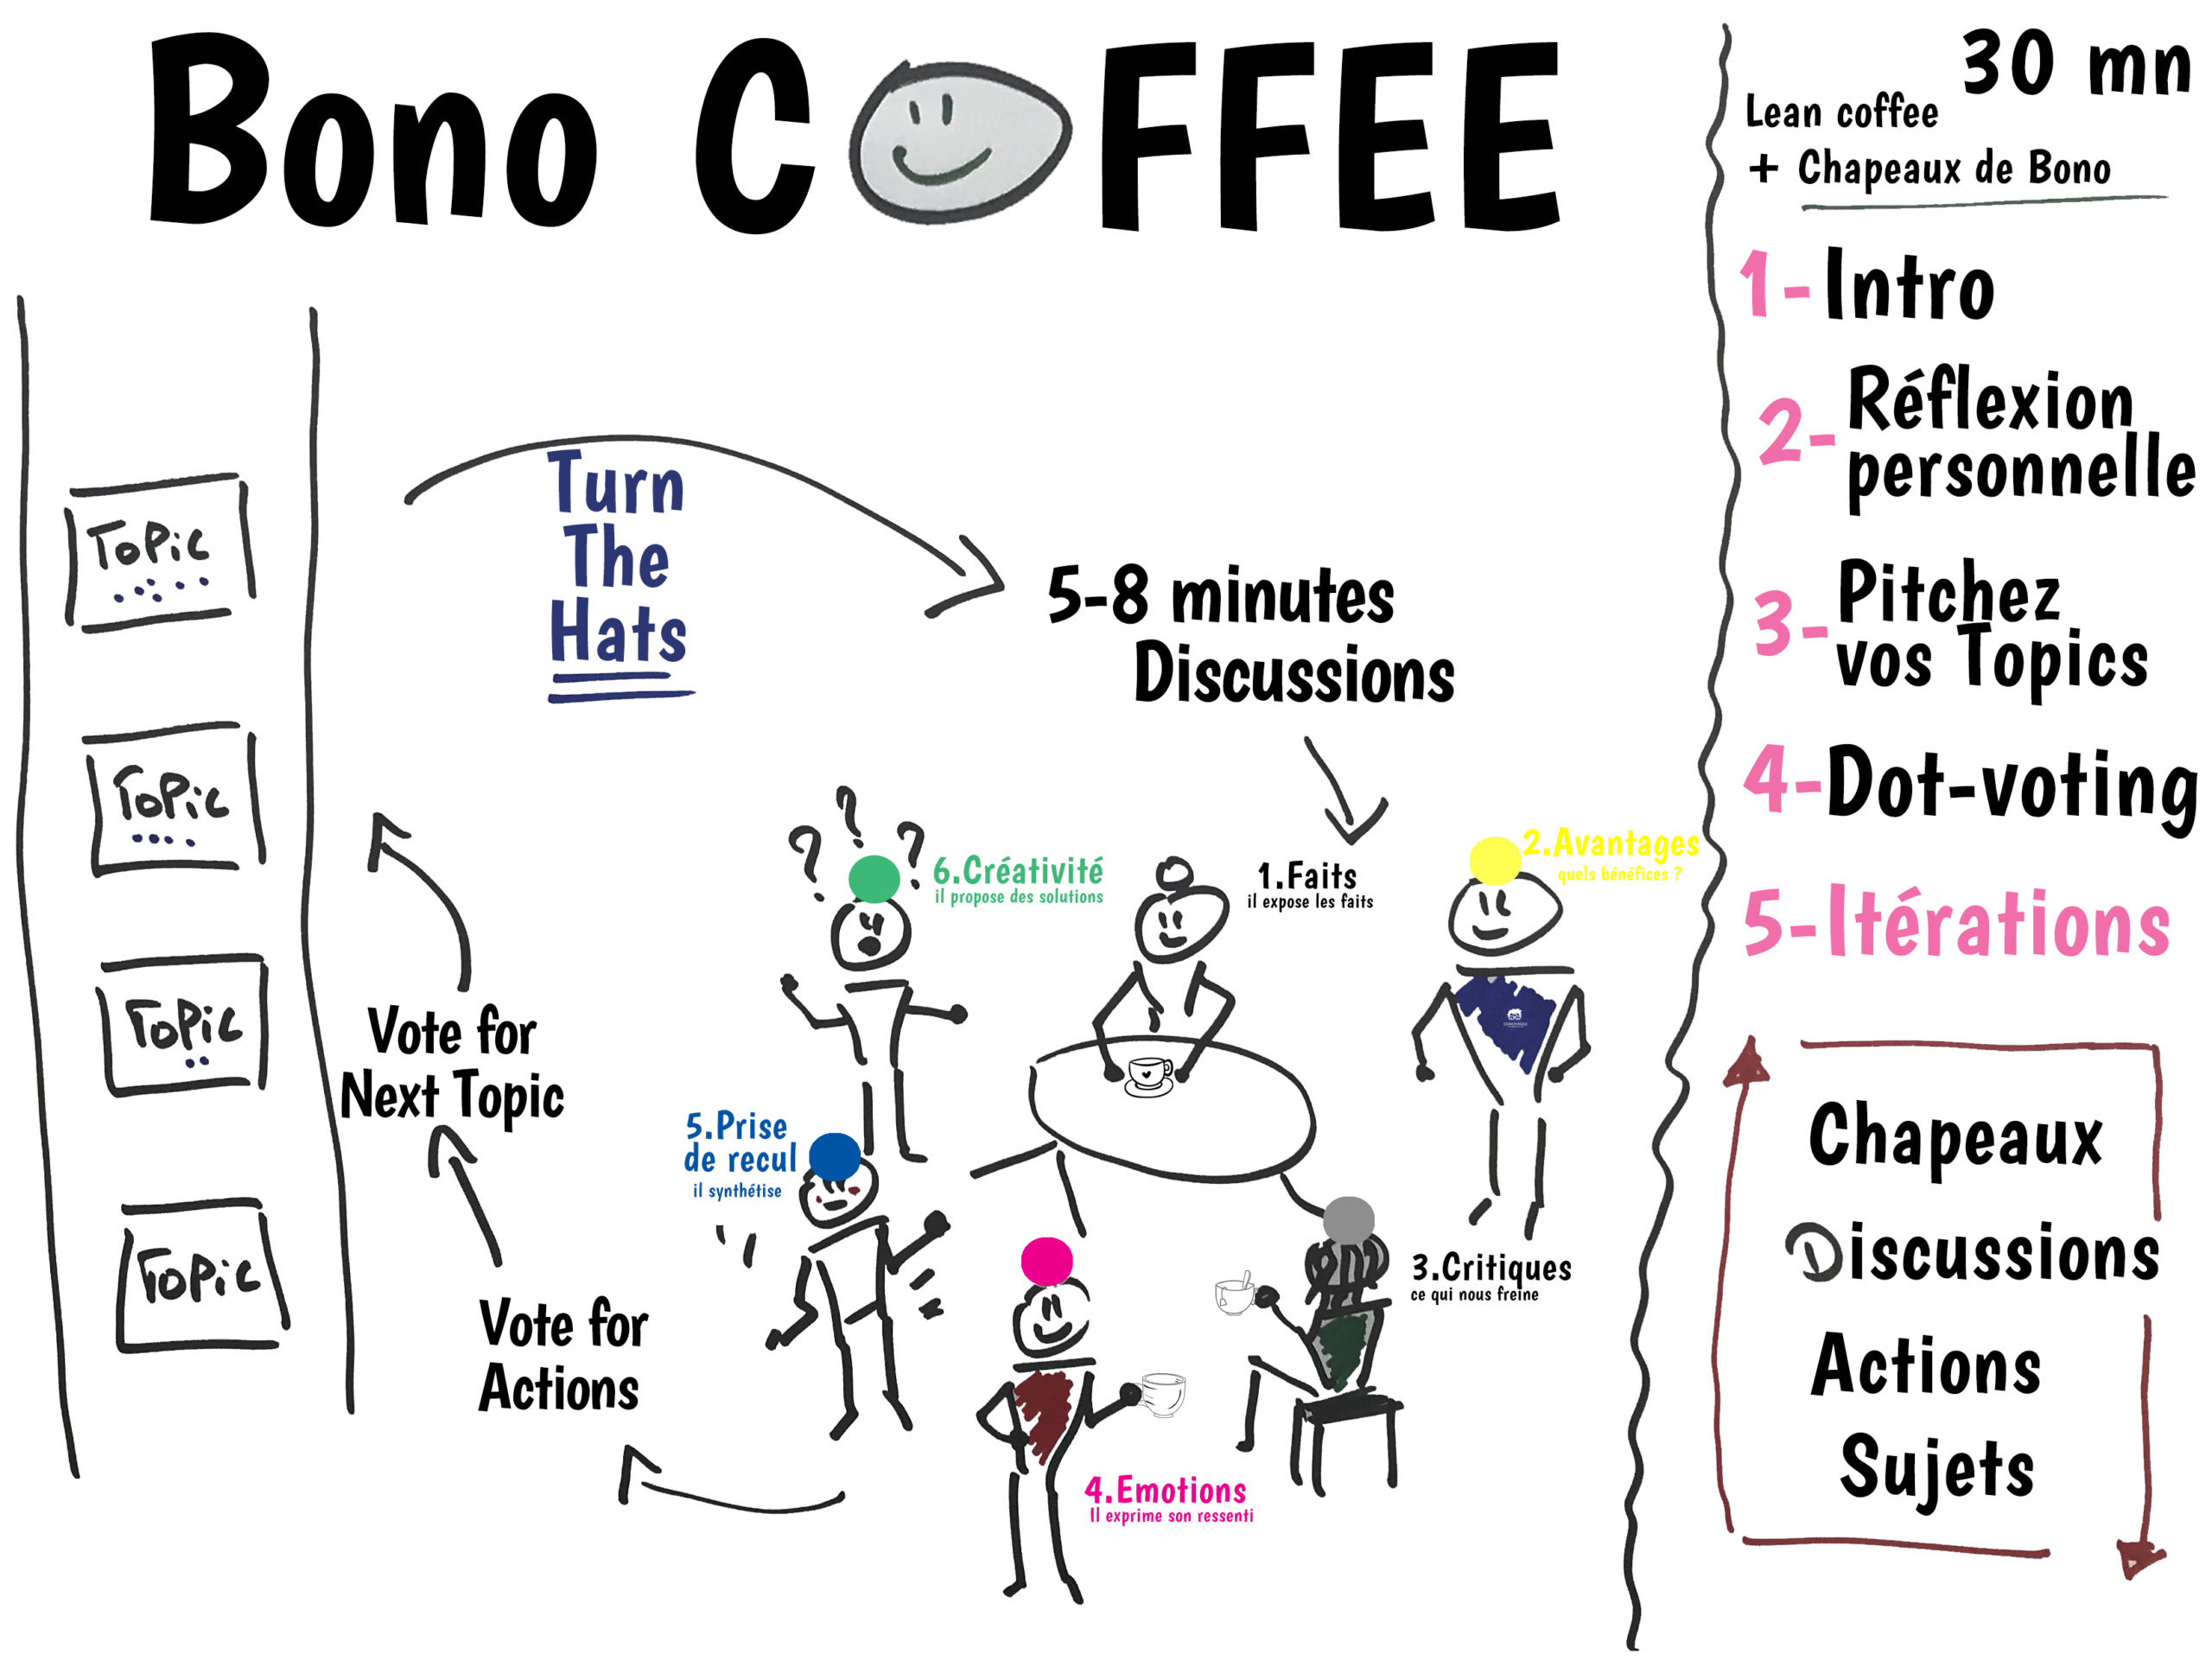 Agile Bono Coffee